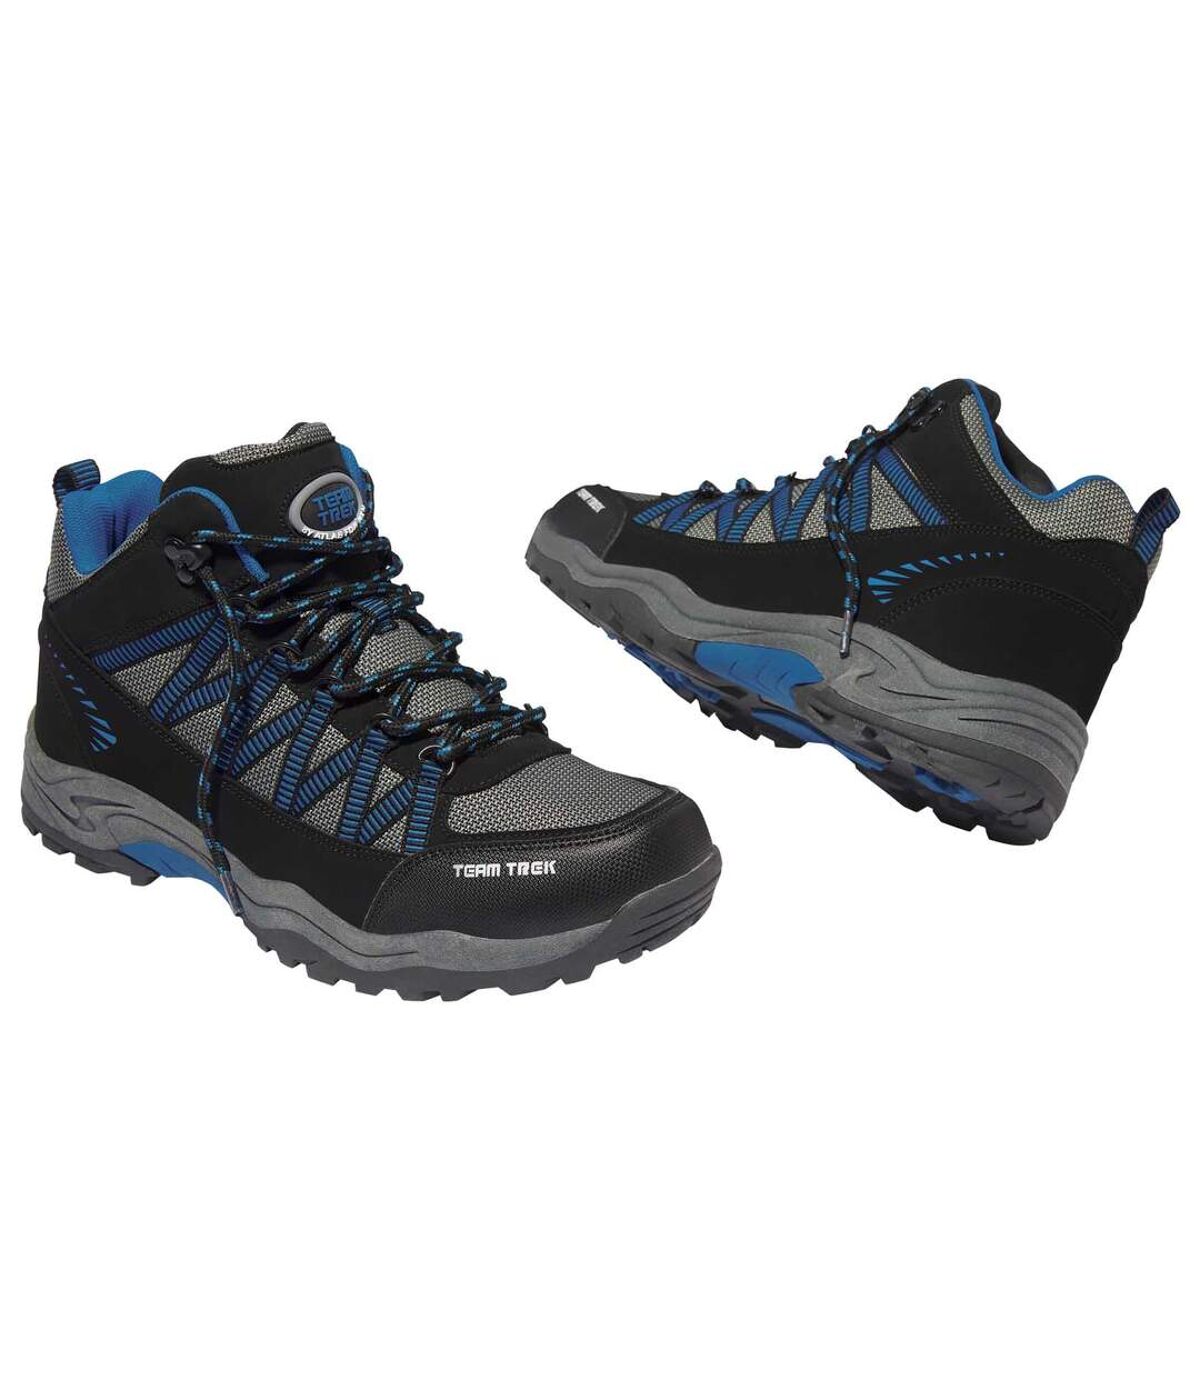 Men's Black and Gray Hiking Boots - Team Trek® by Atlas for Men Atlas For Men